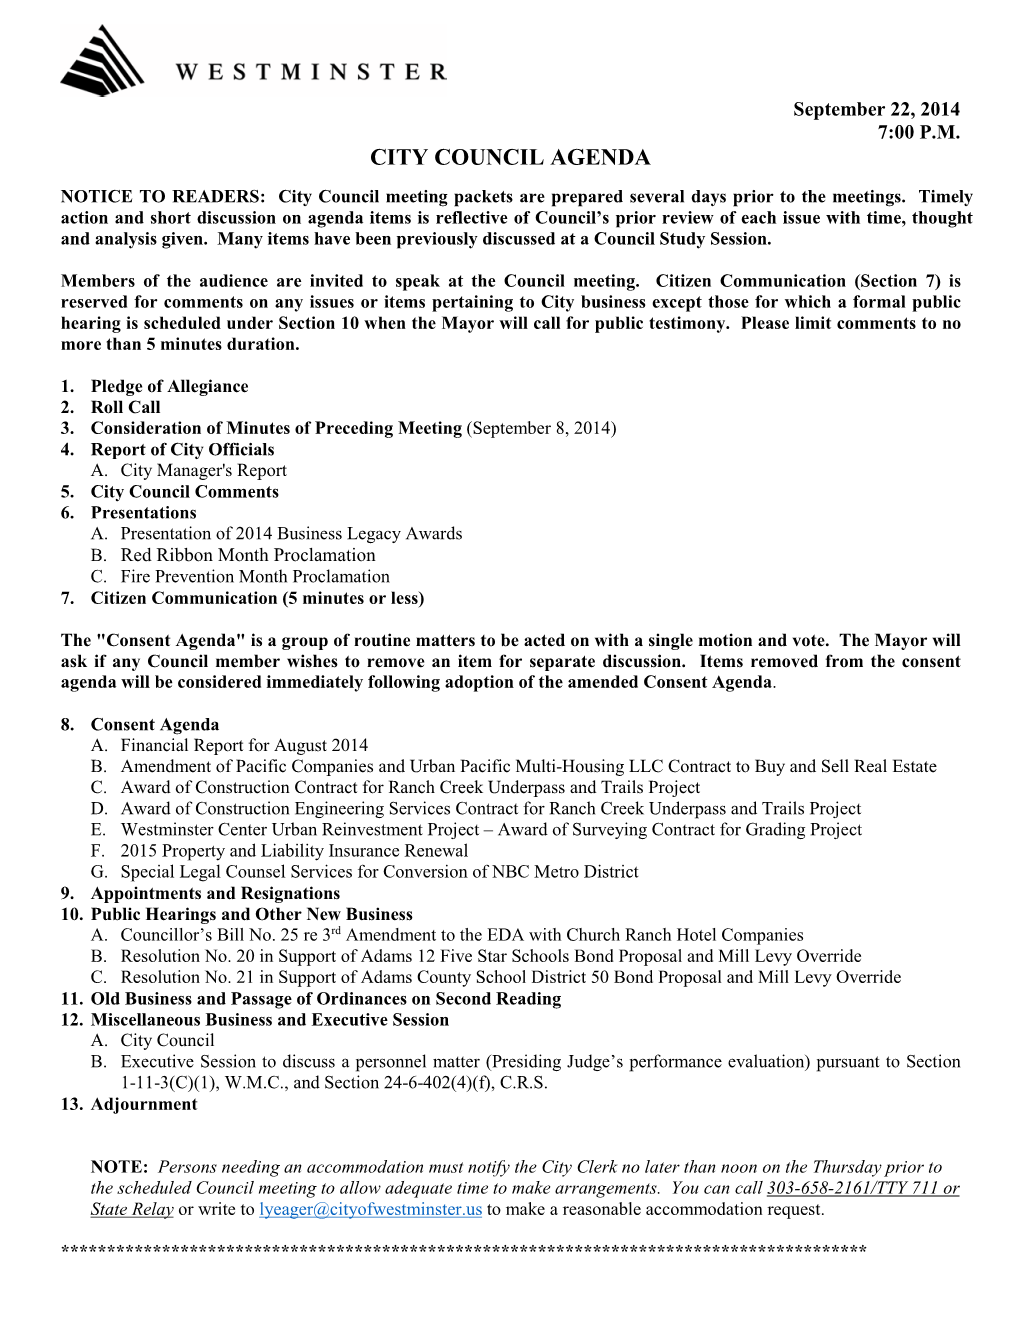 City Council Agenda for September 22, 2014